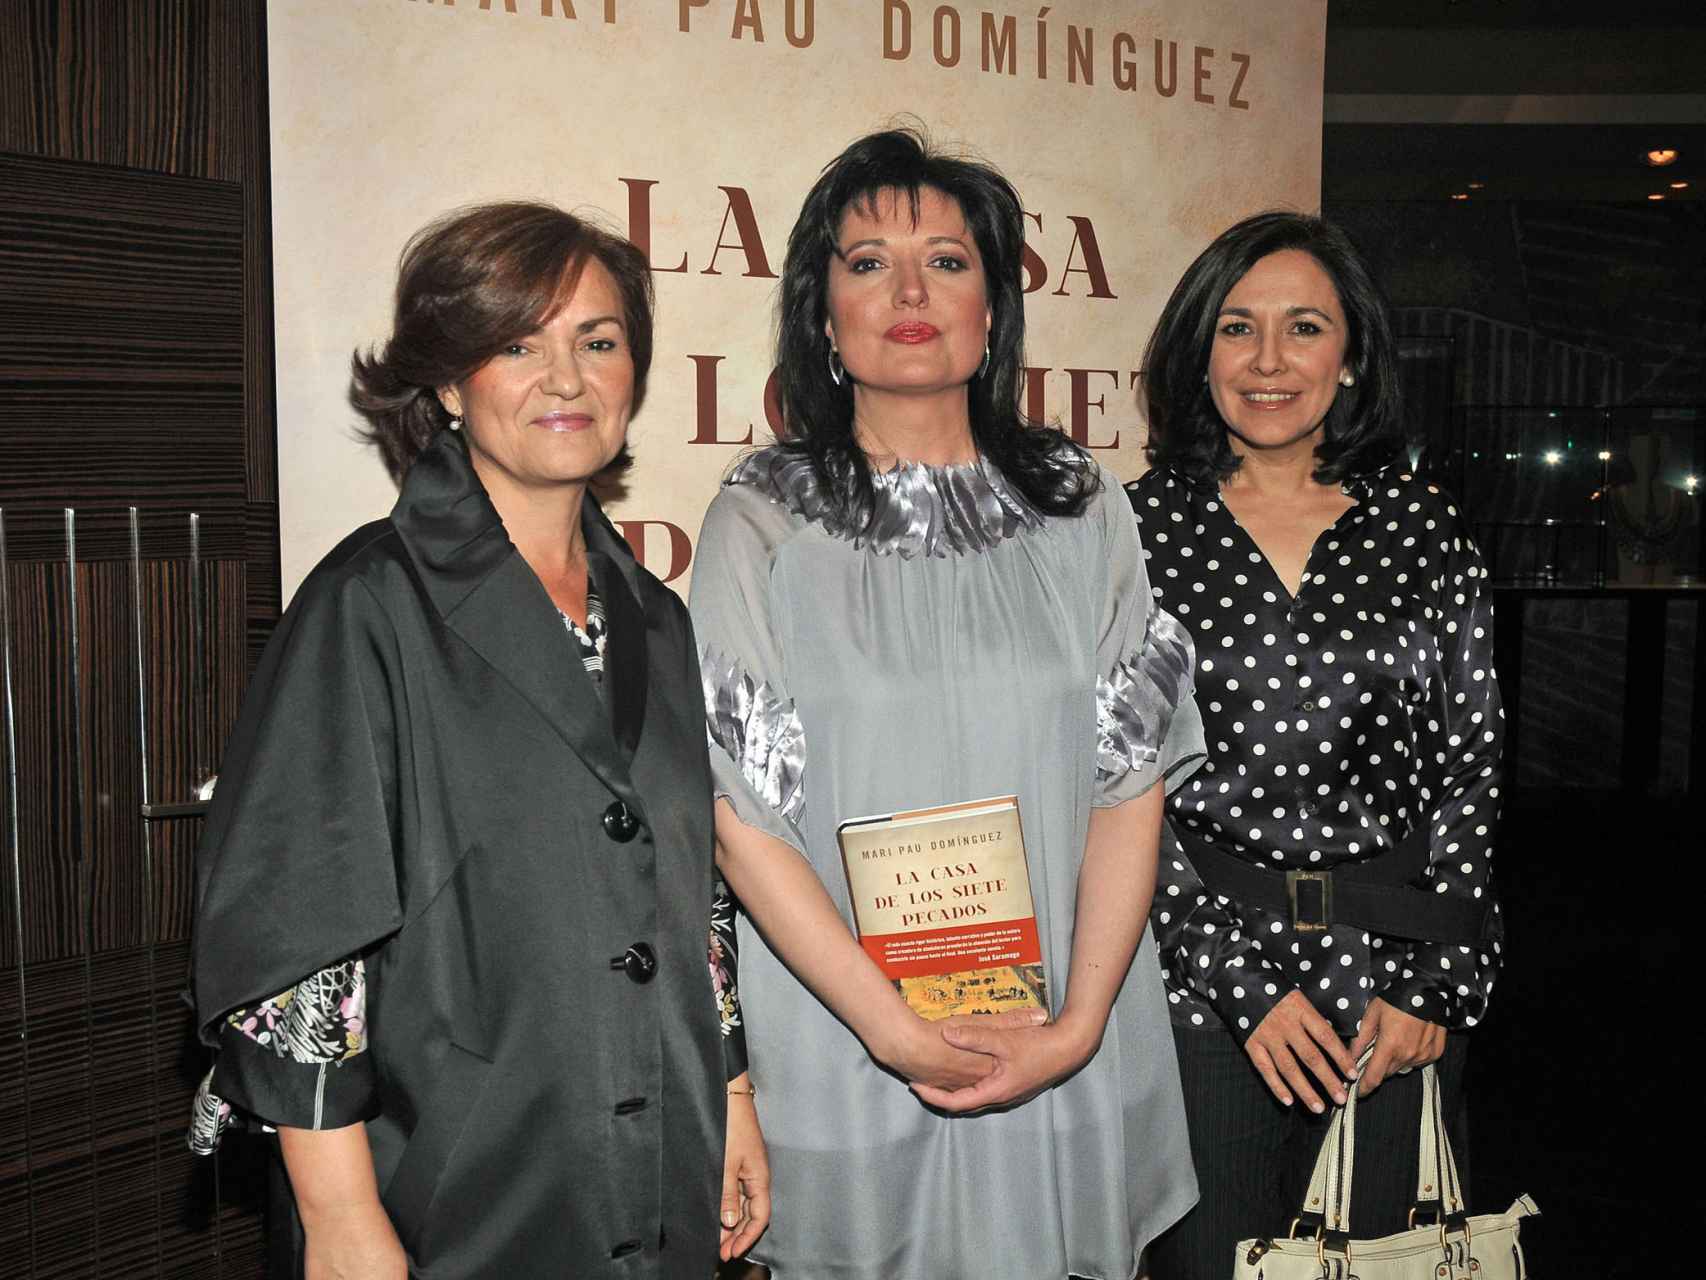 Carmen Calvo e Isabel Gemio apoyando a Mari Pau Domínguez en la presentación de un libro.